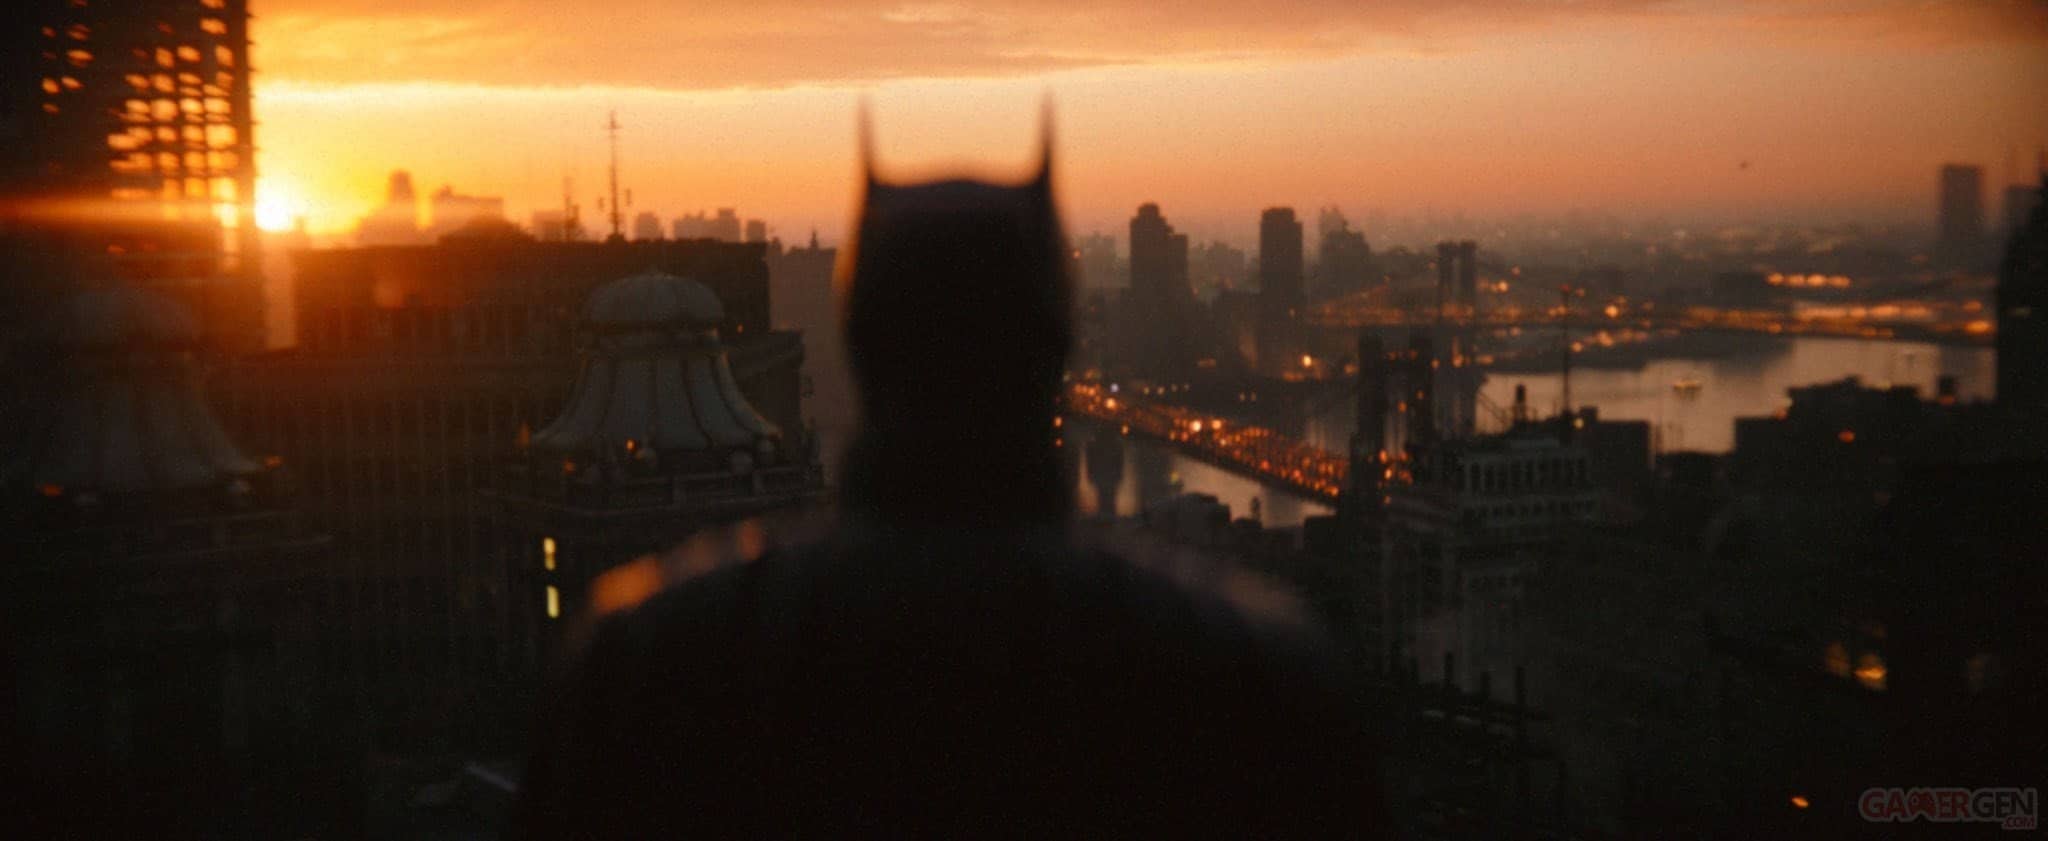 La grande leçon apprise par Bruce Wayne dans The Batman selon Robert Pattinson